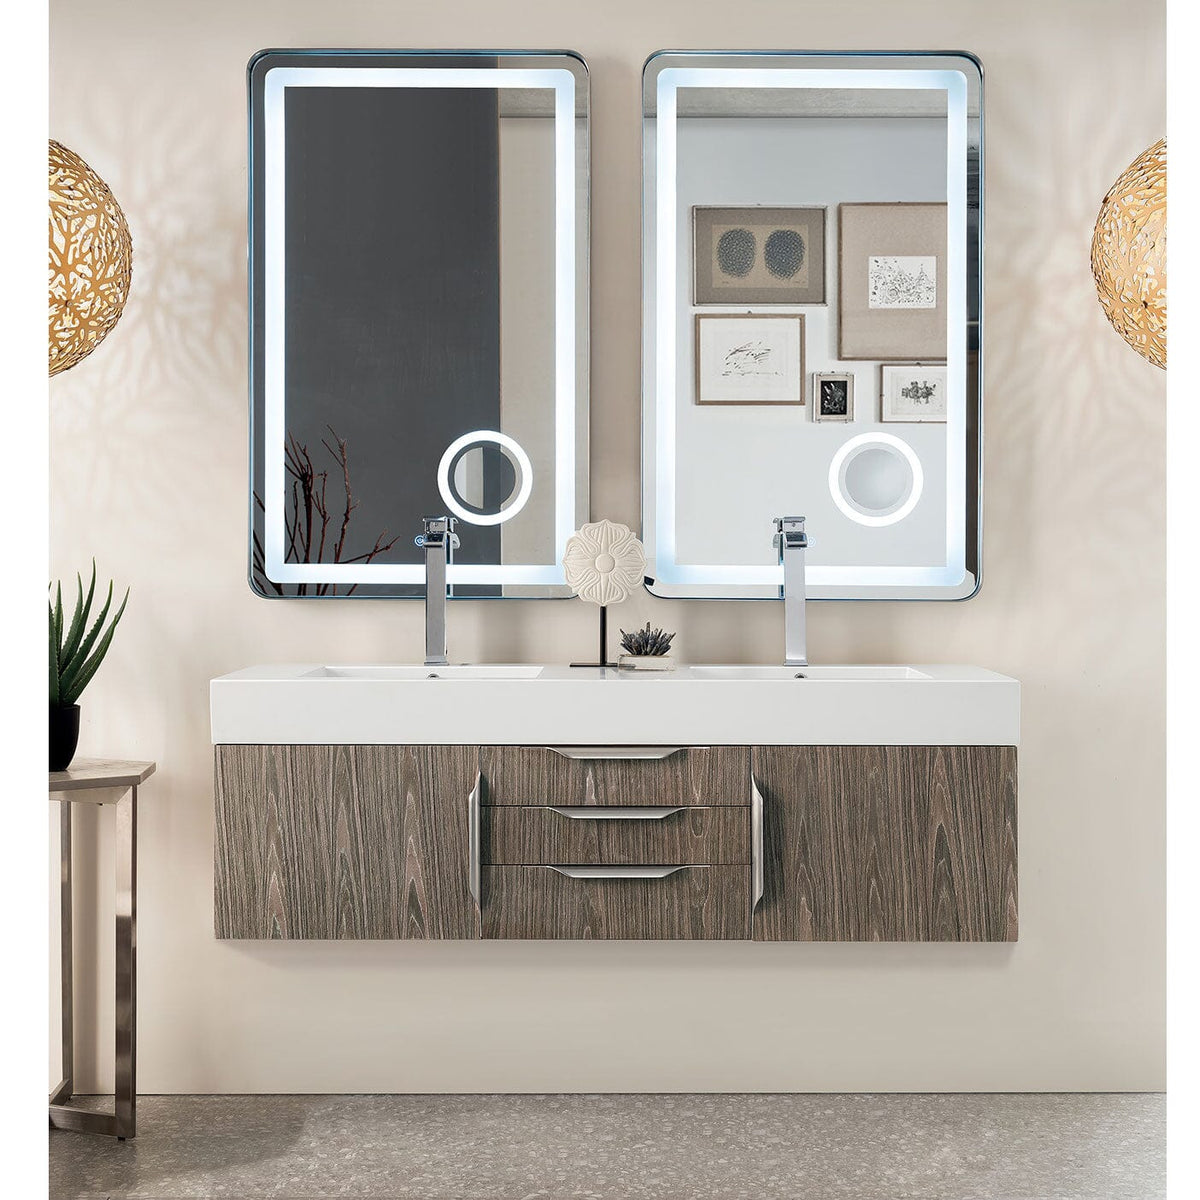 59" Mercer Island Double Bathroom Vanity, Ash Gray